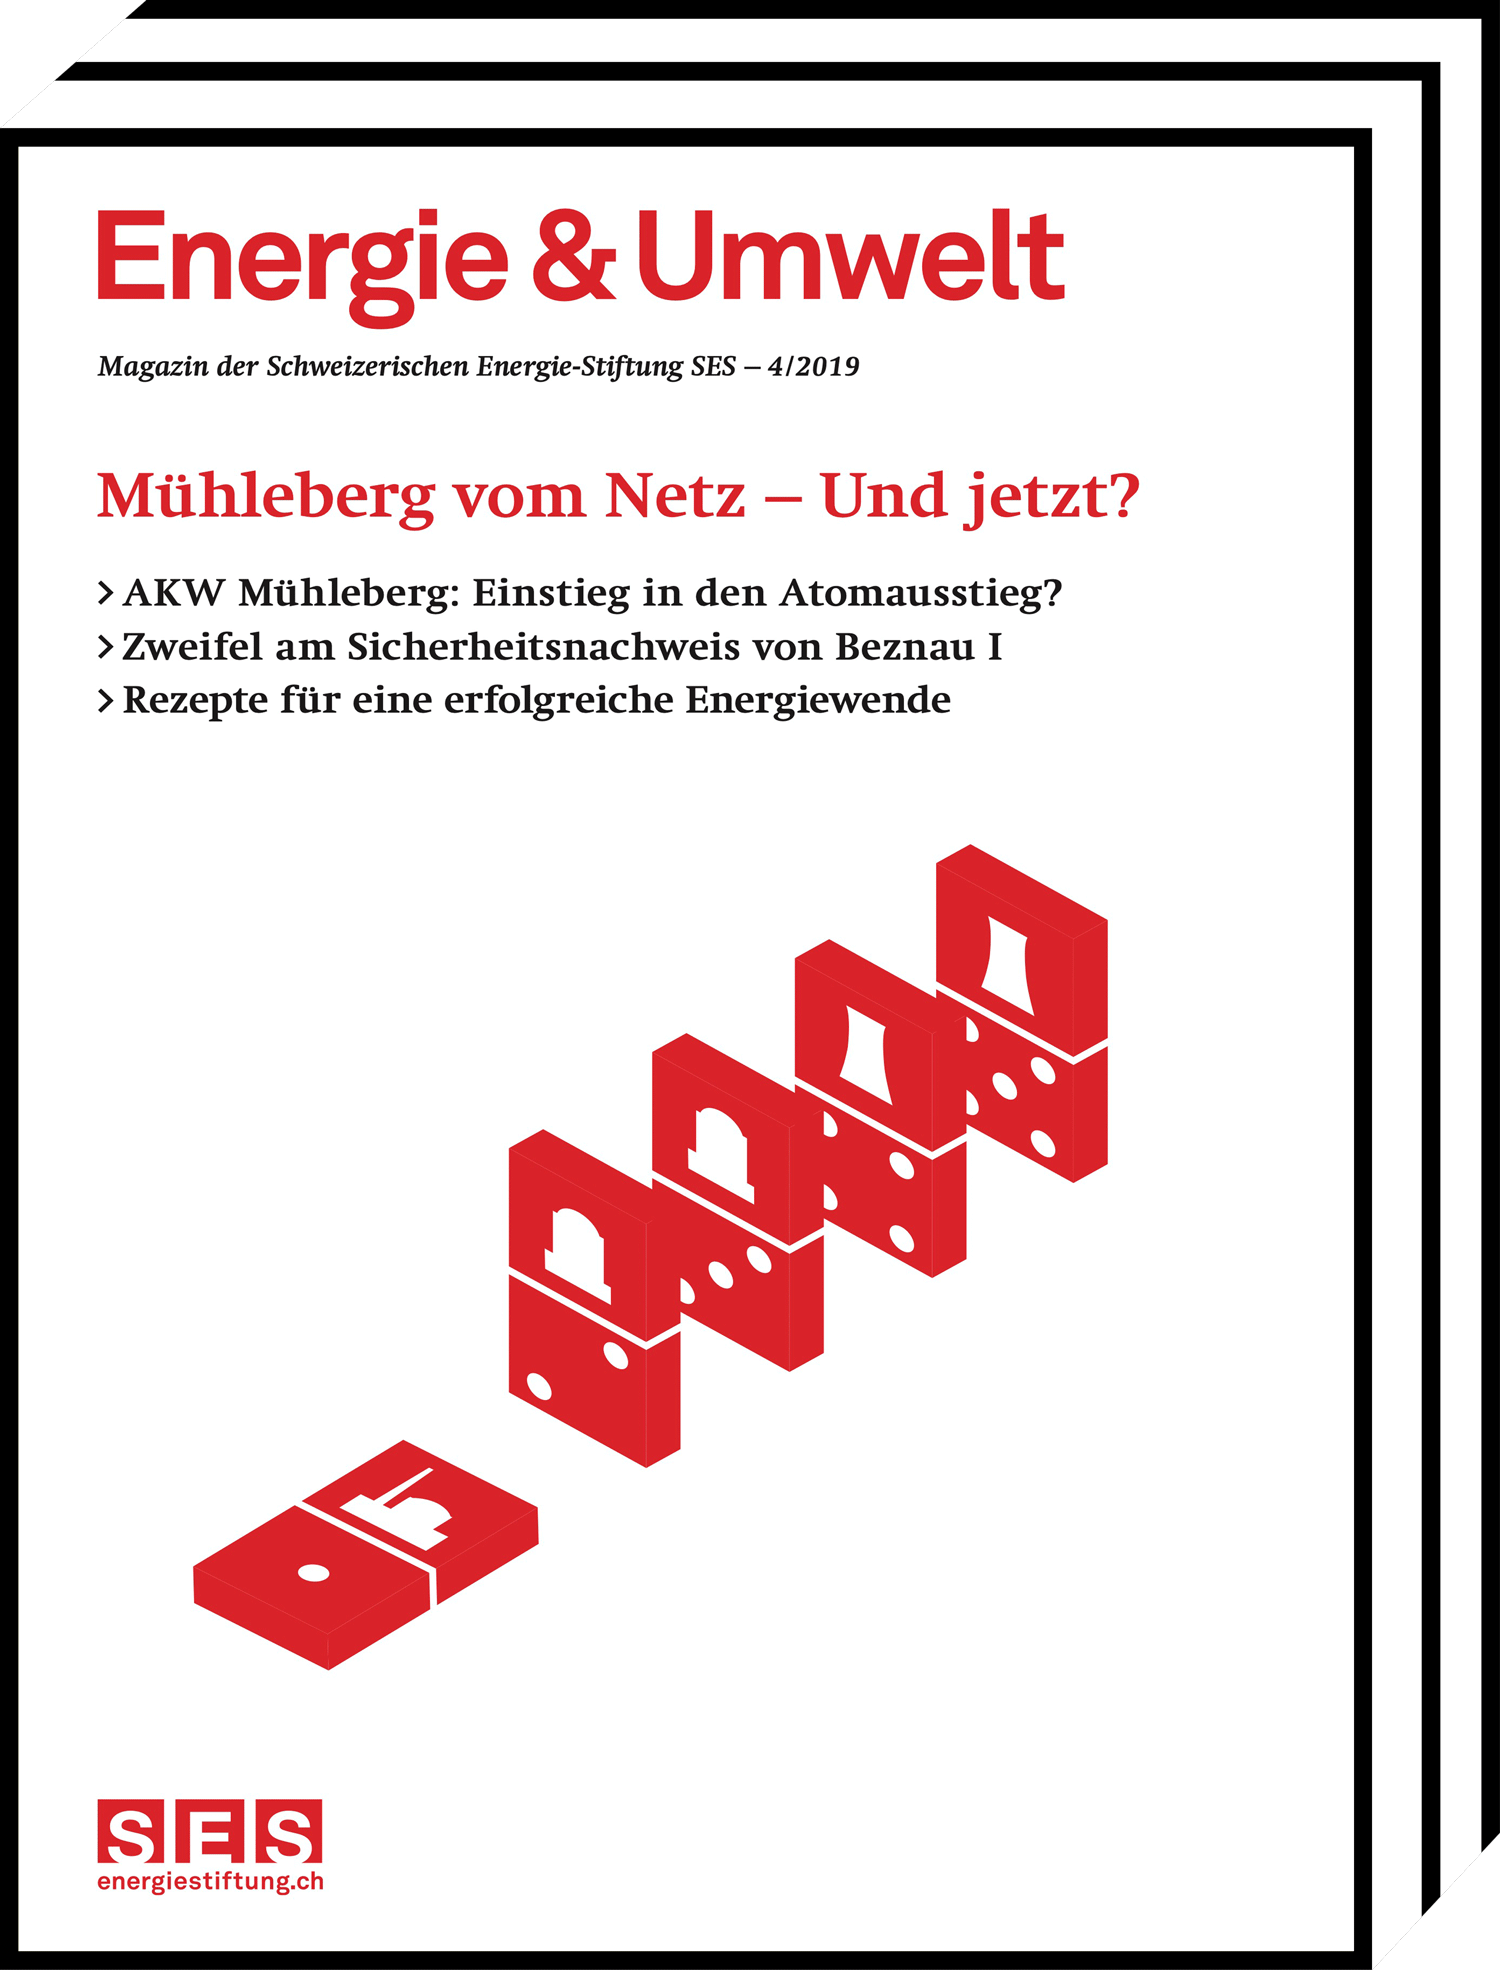 Energie&Umwelt - Mühleberg vom Netz - Und jetzt?